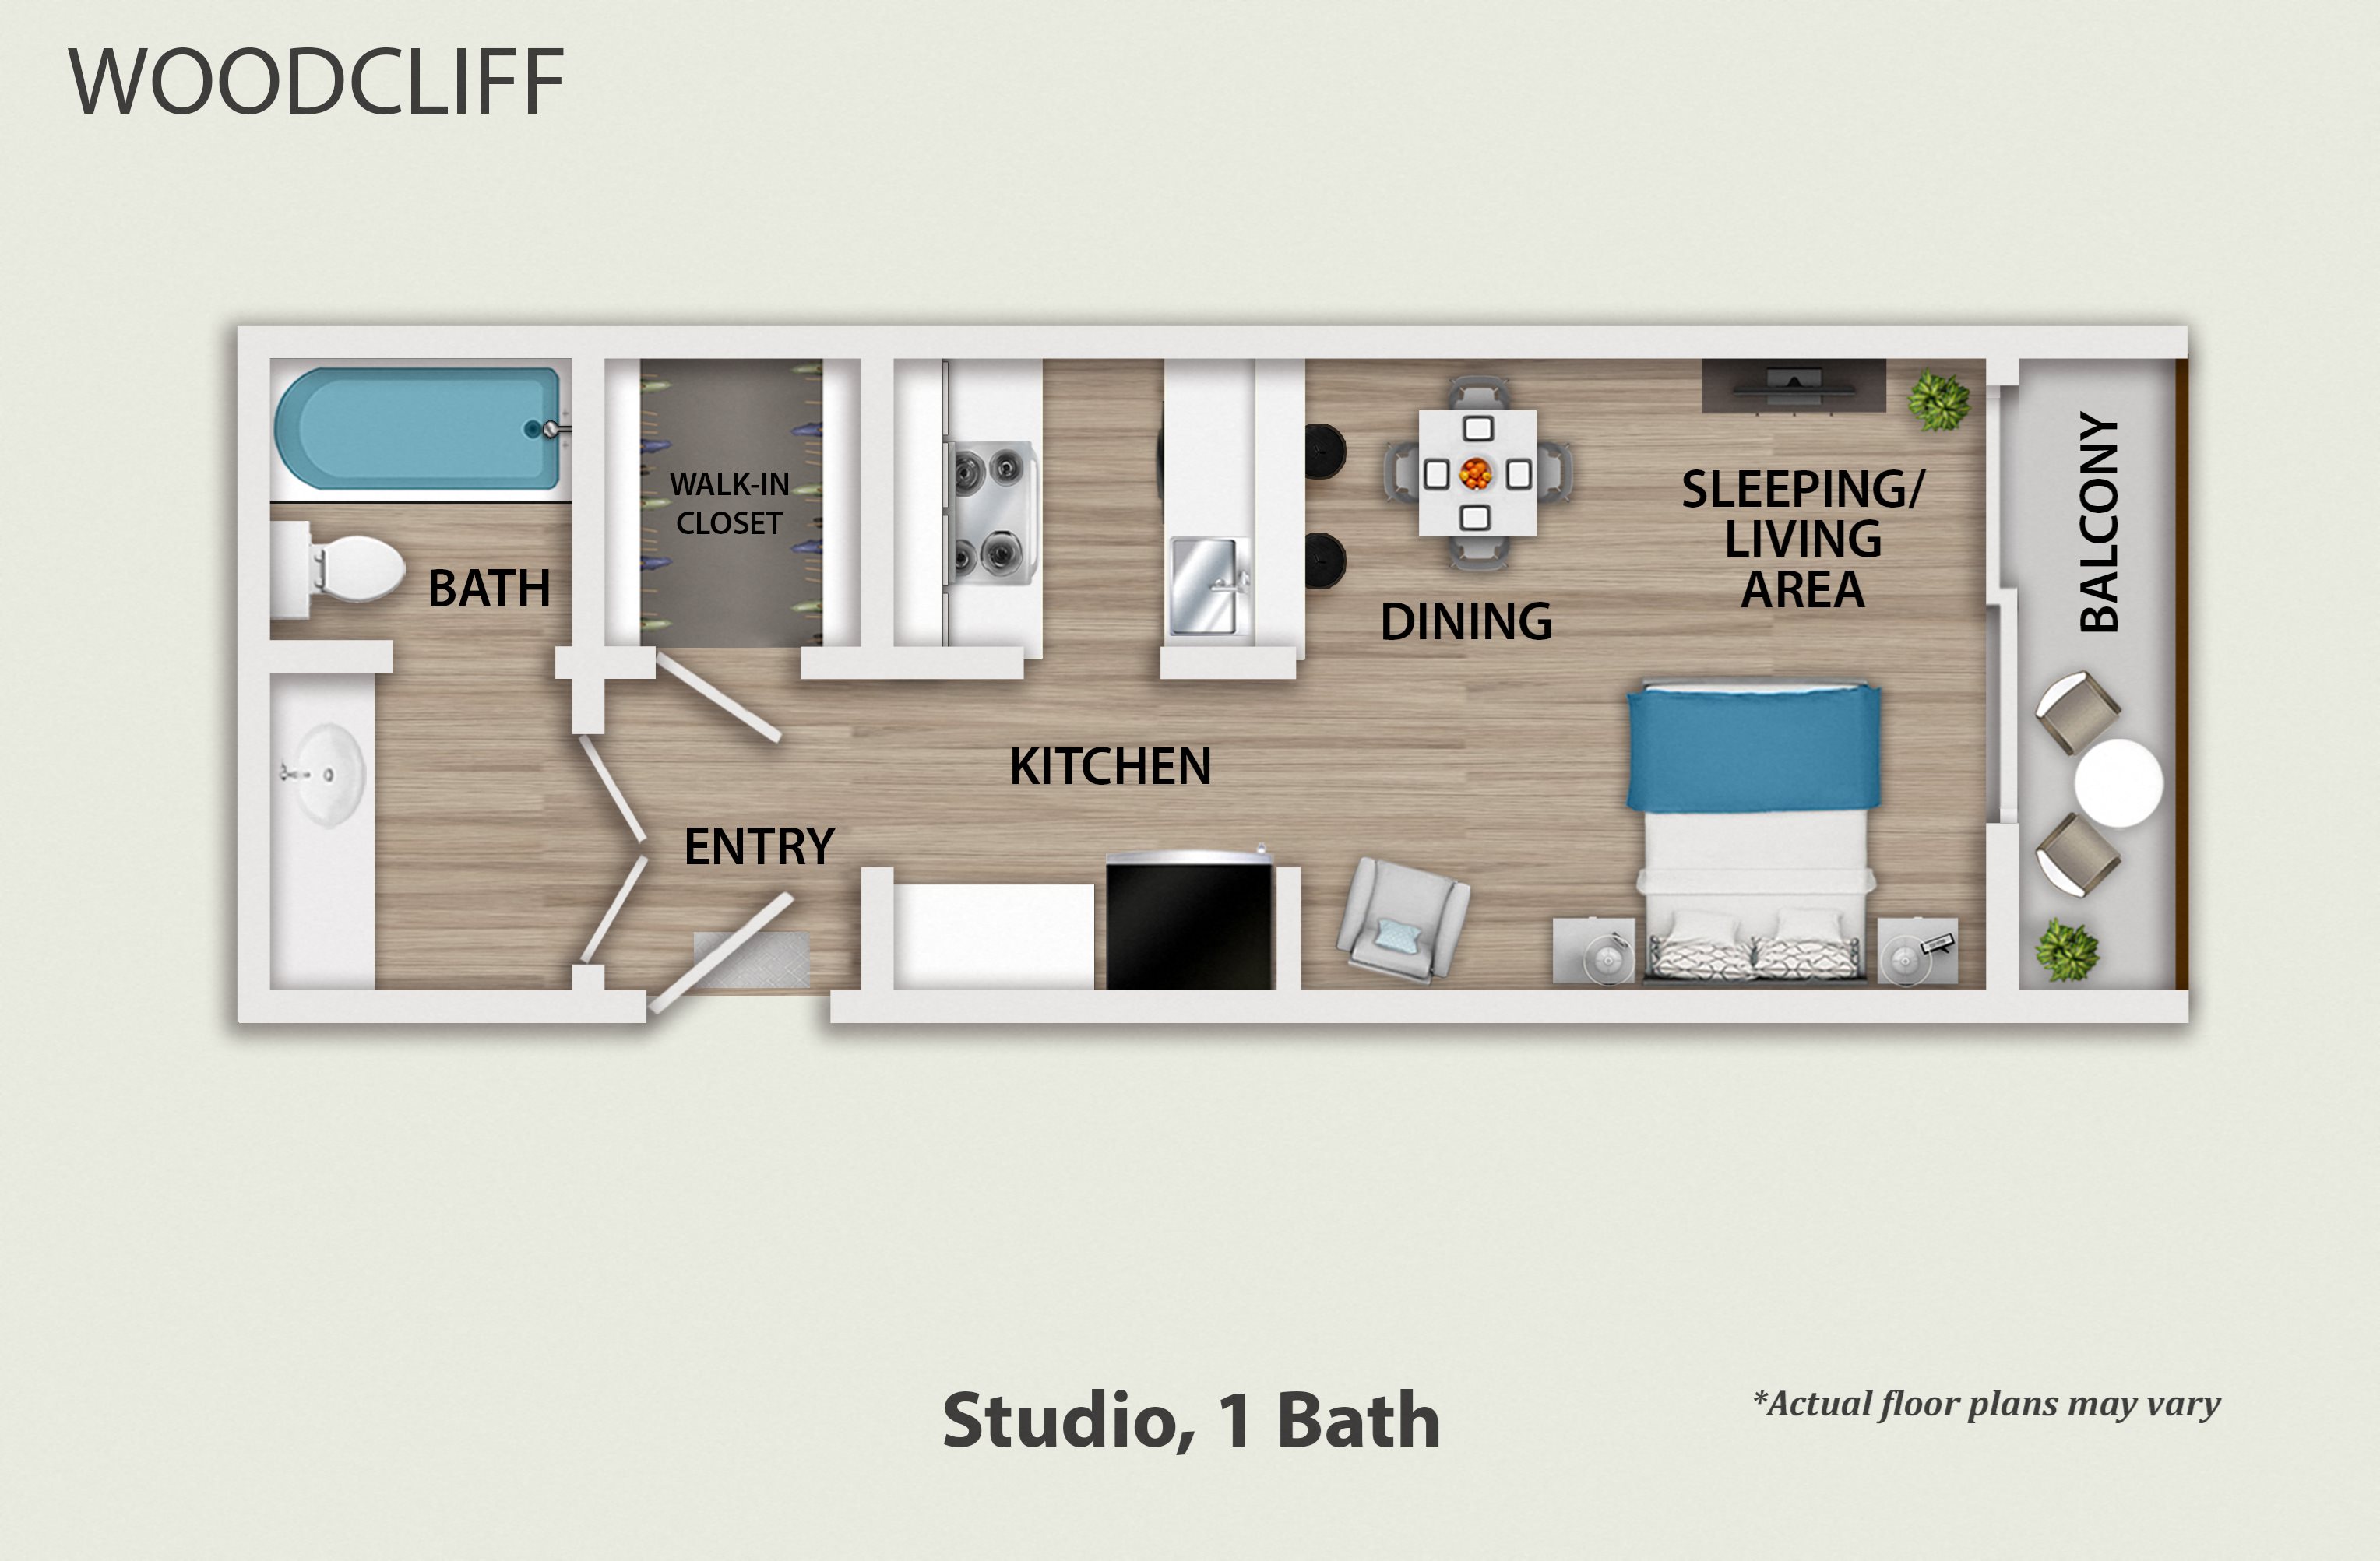 Studio, 1 & 2 Bedroom Apts in Palms, Culver City Floor Plans